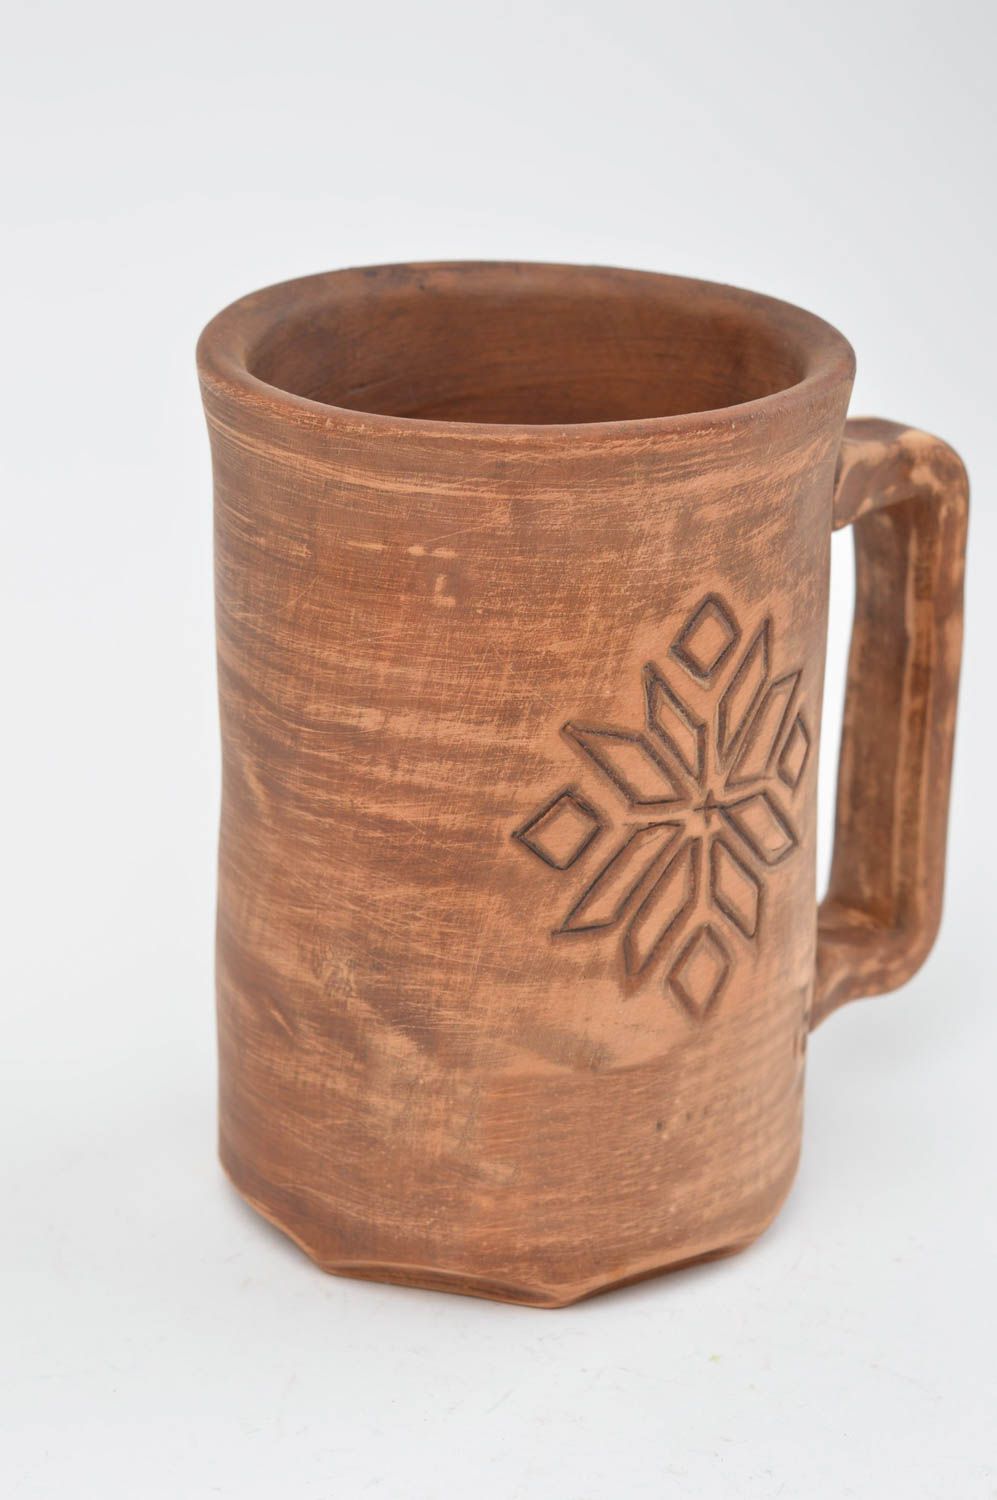 Глиняная чашка оригинальная кружка ручной работы с тиснением ромбиками фото 3